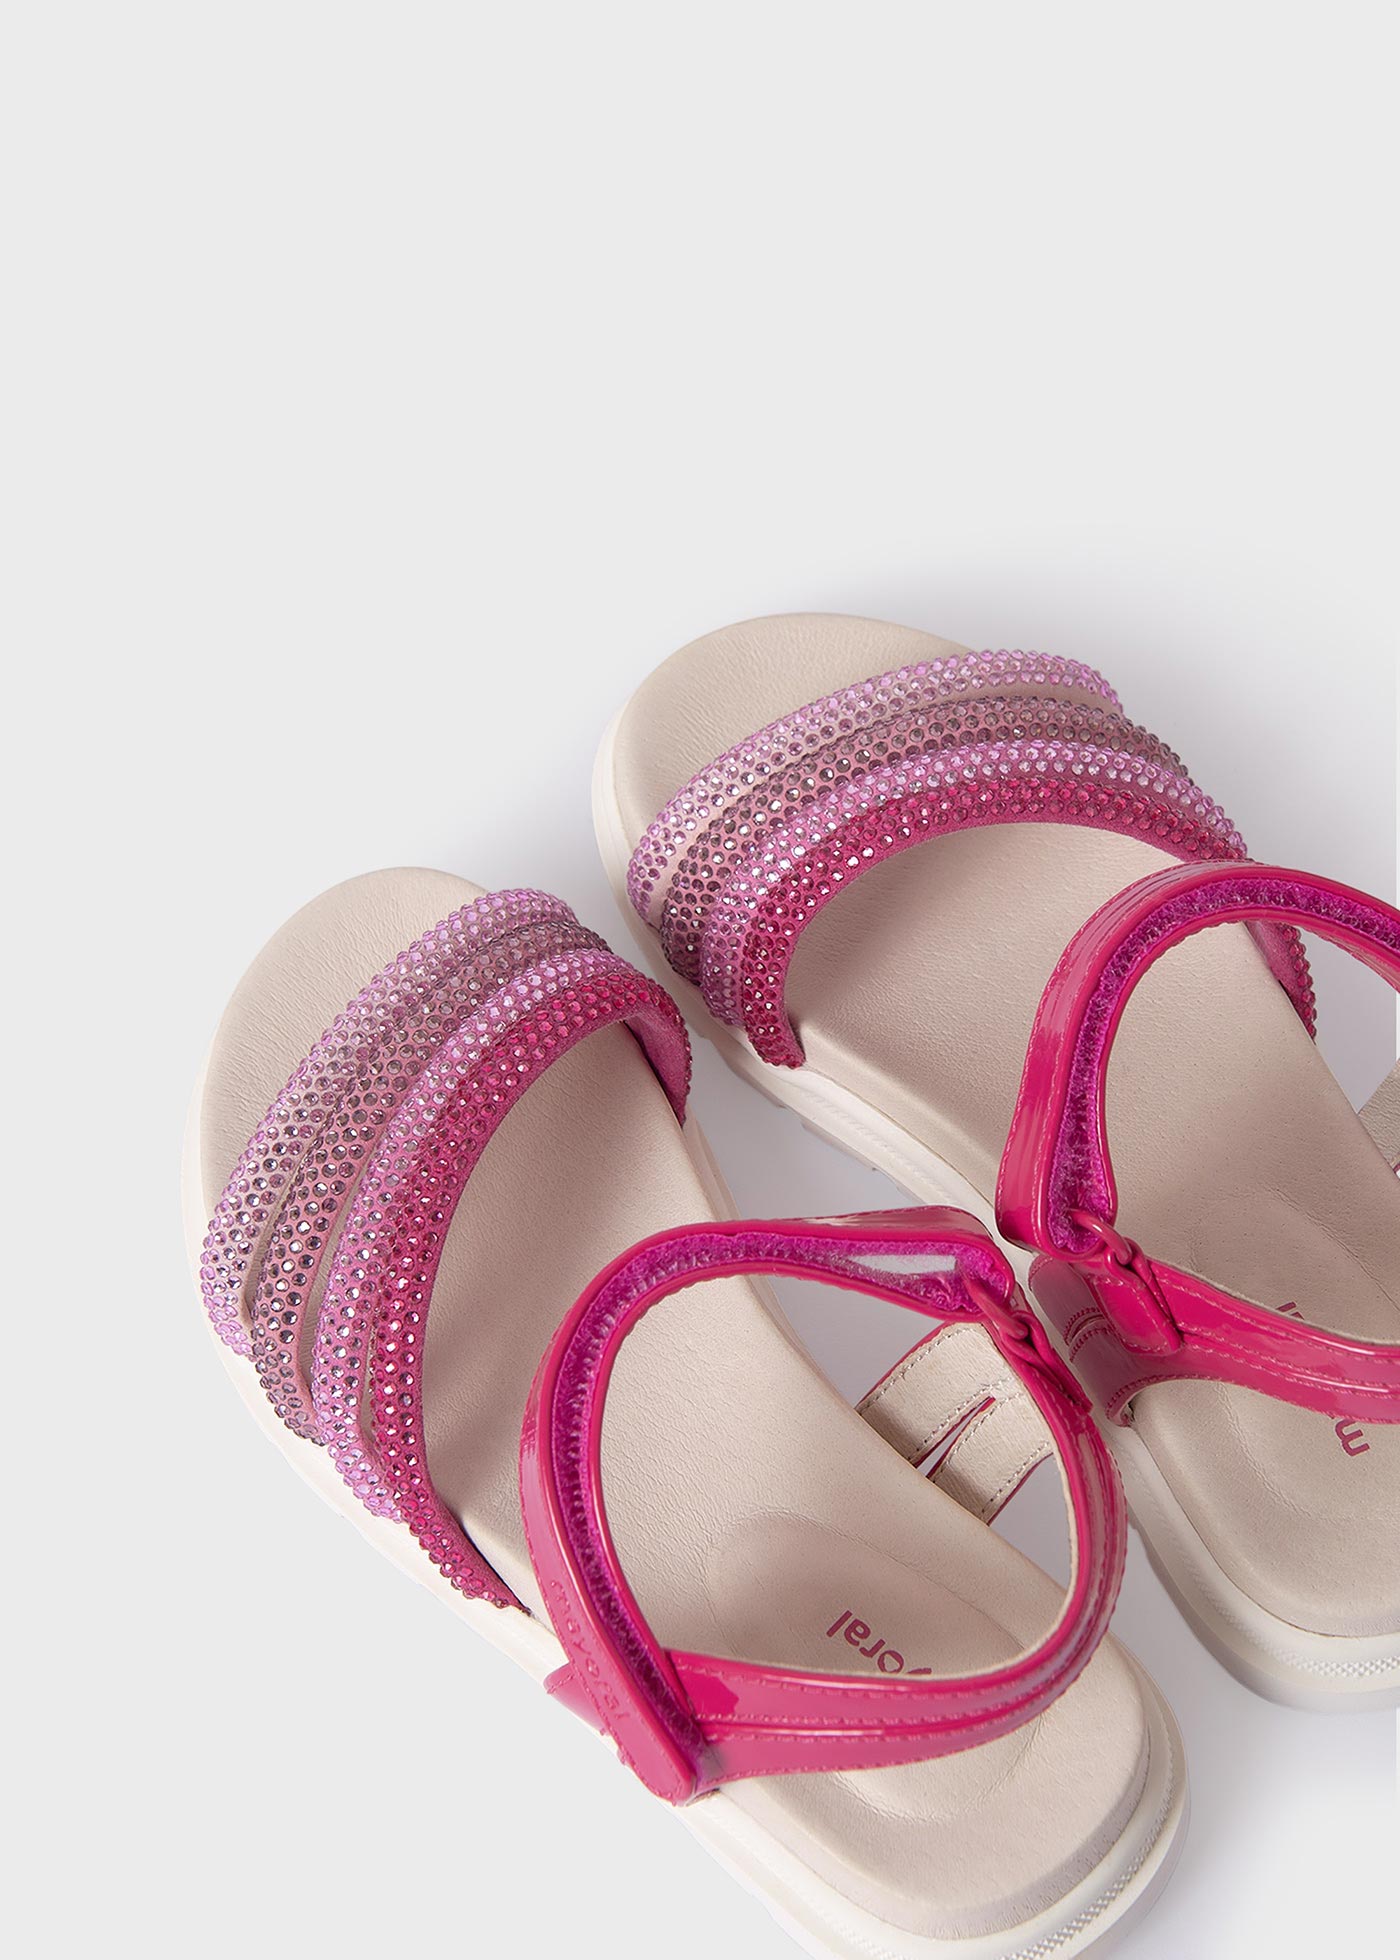 Cliivour Girls High Heels Dress Pump Sandals Glitter India | Ubuy